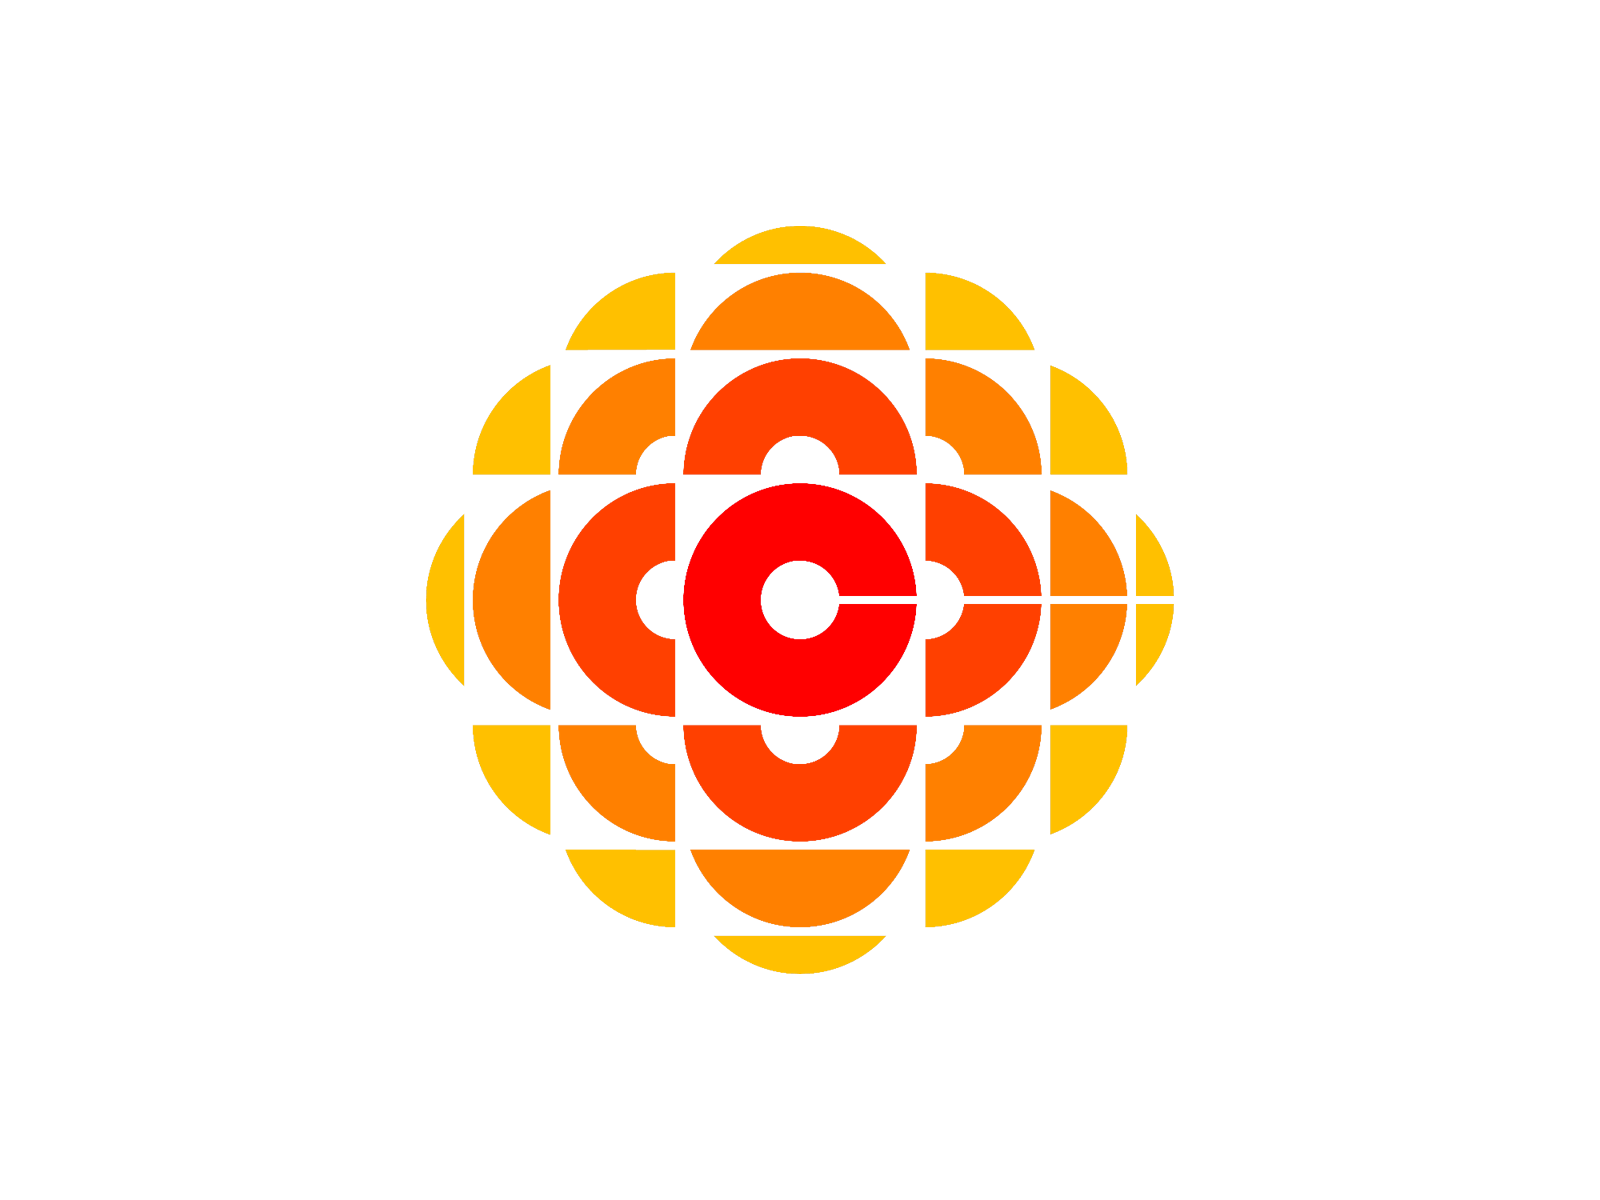 CBC Logo - CBC logo 1974 designed